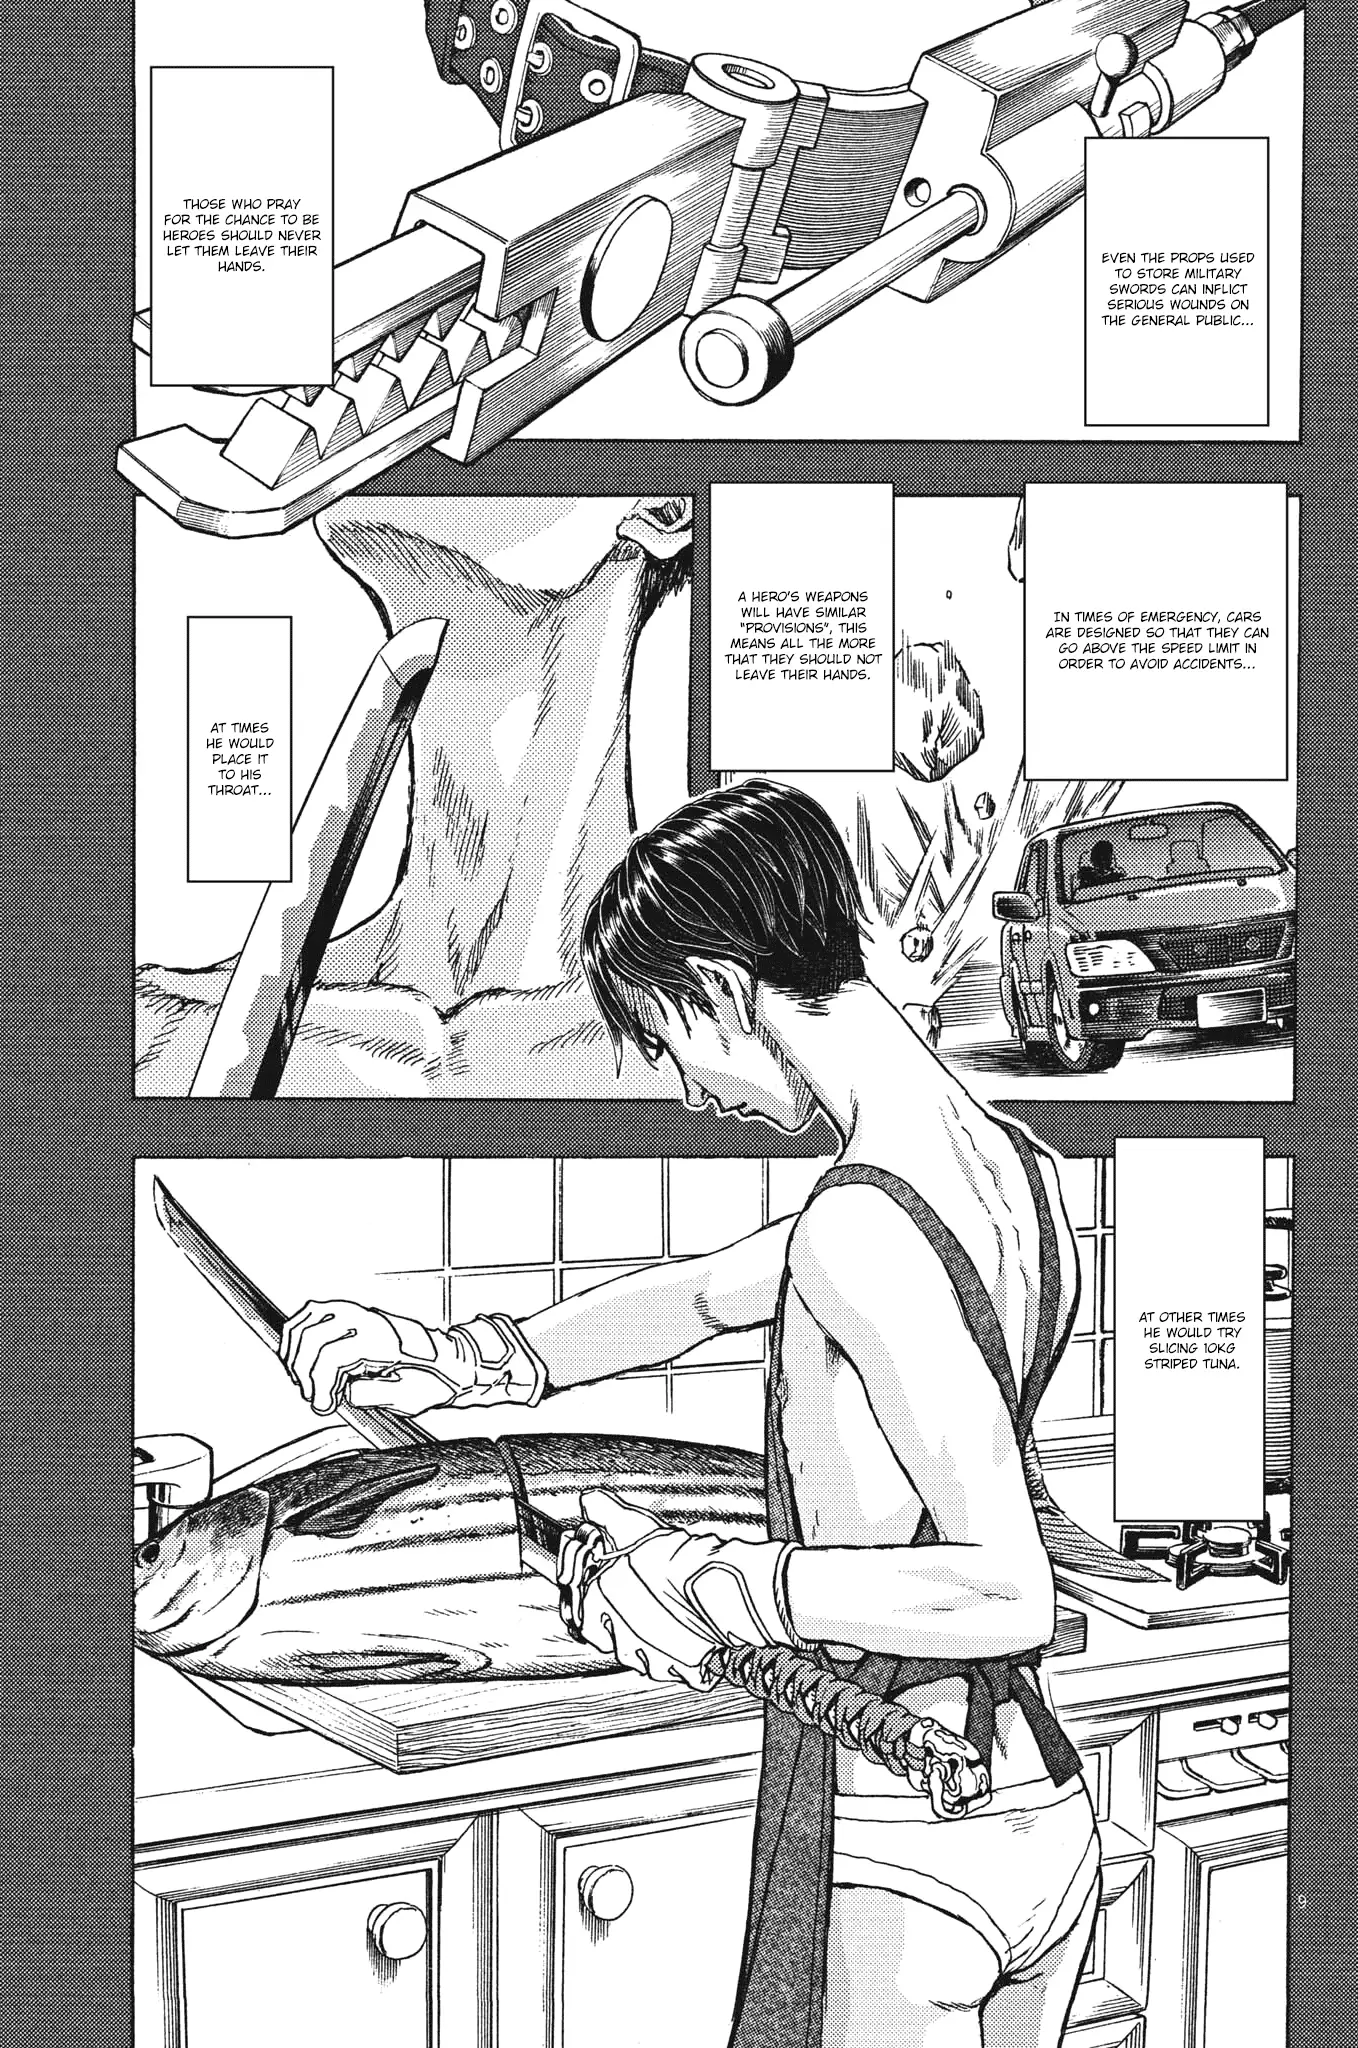 Gekikou Kamen - 25 page 9-b38d5bde